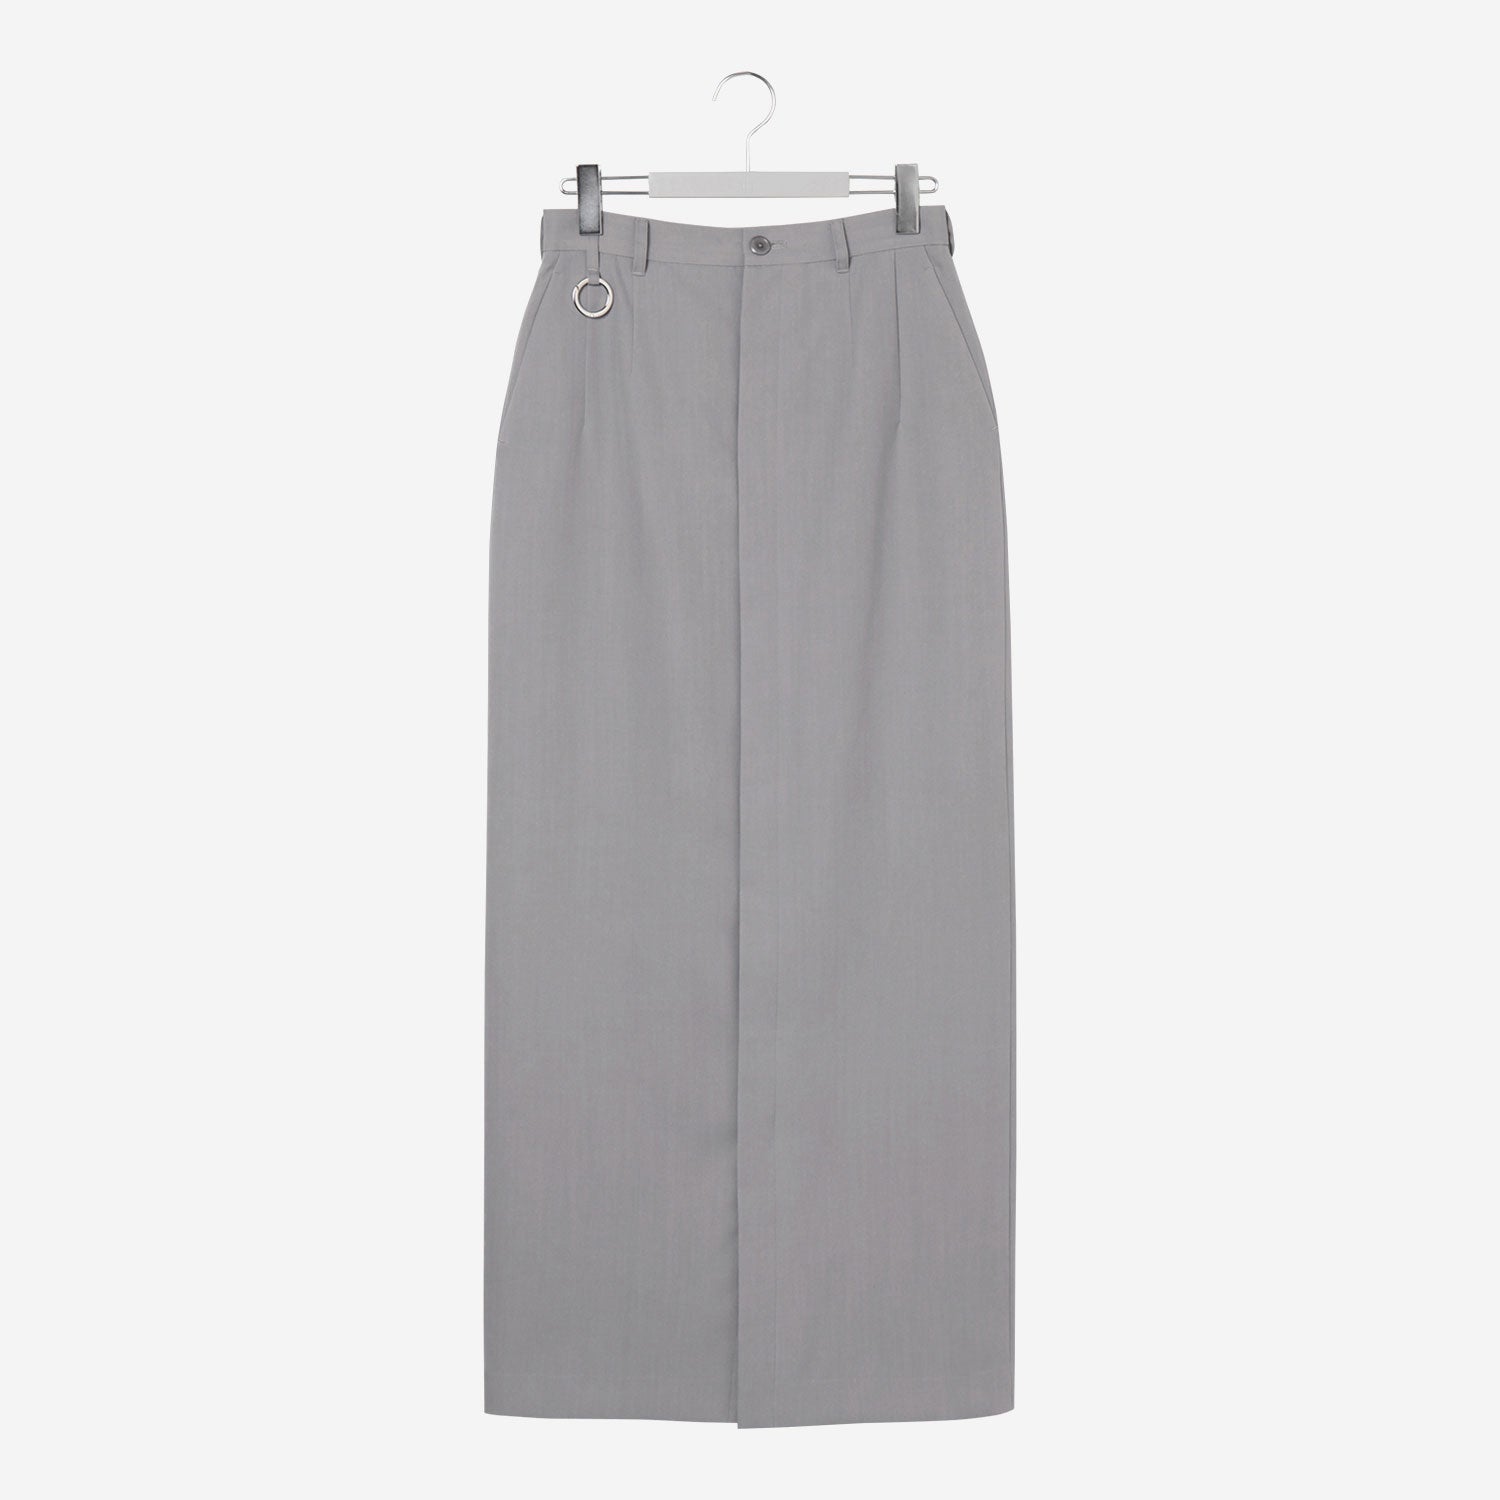 Long Open Skirt / gray